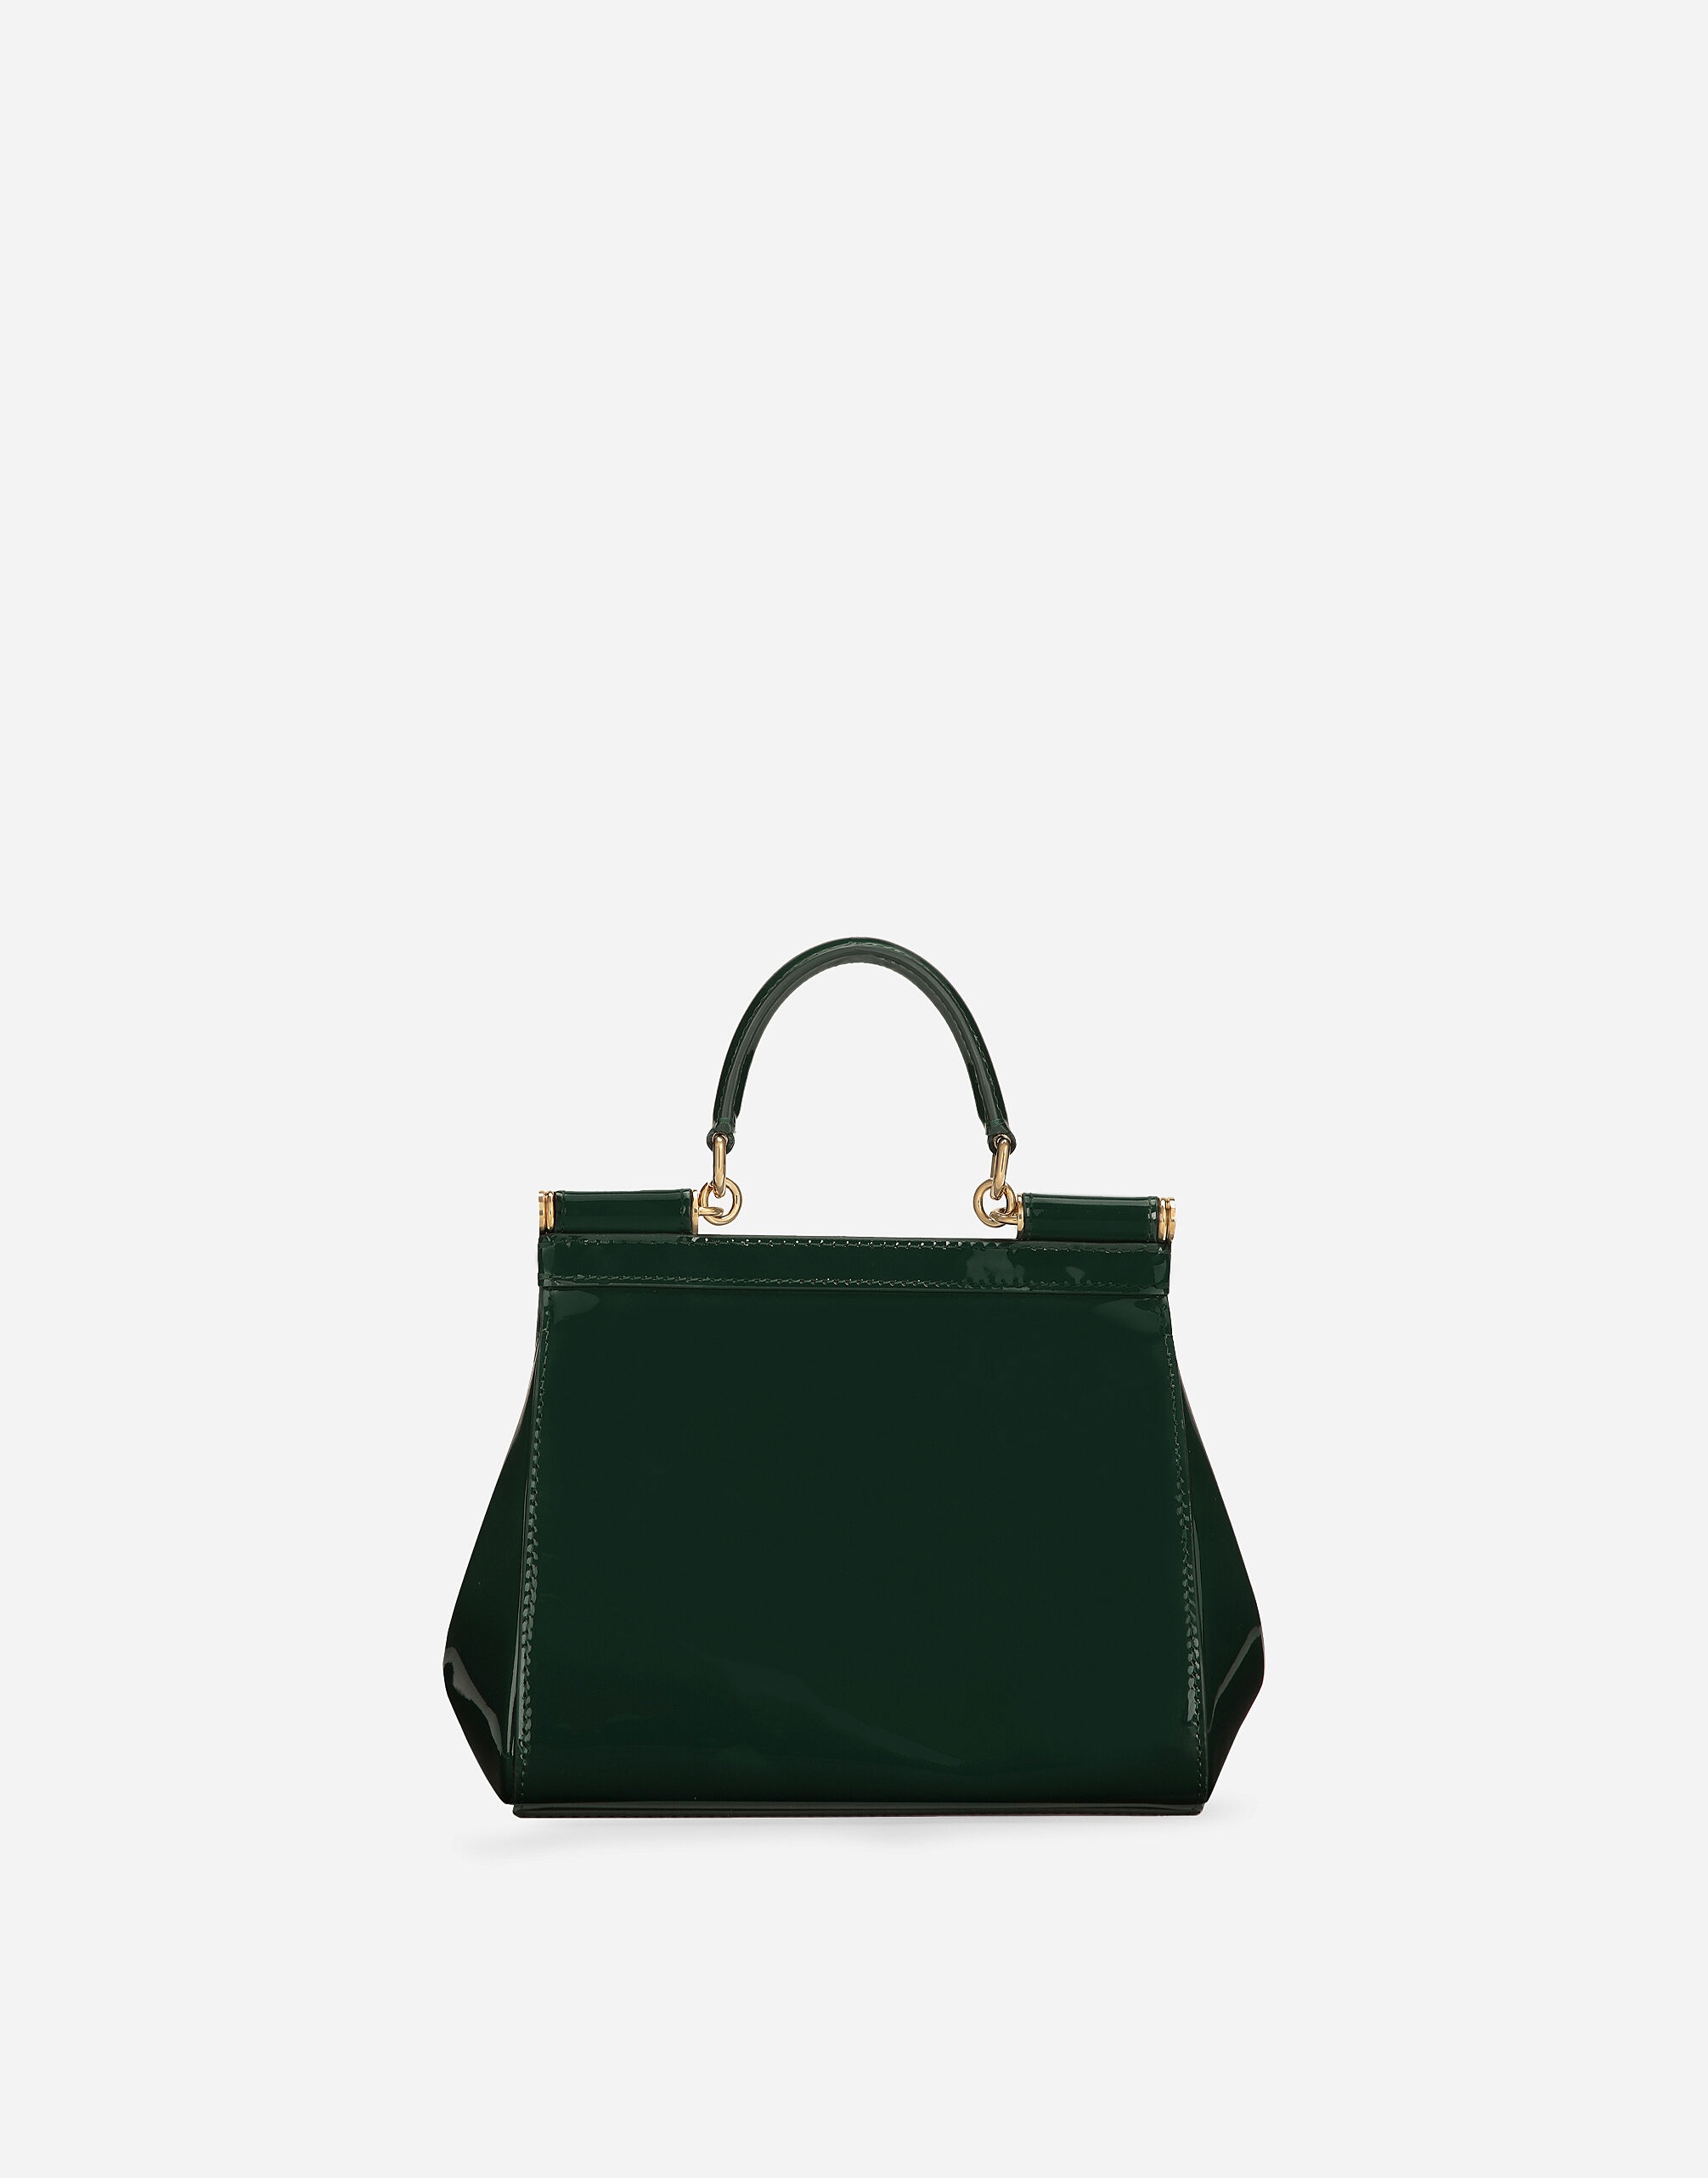 Medium Sicily handbag - 4